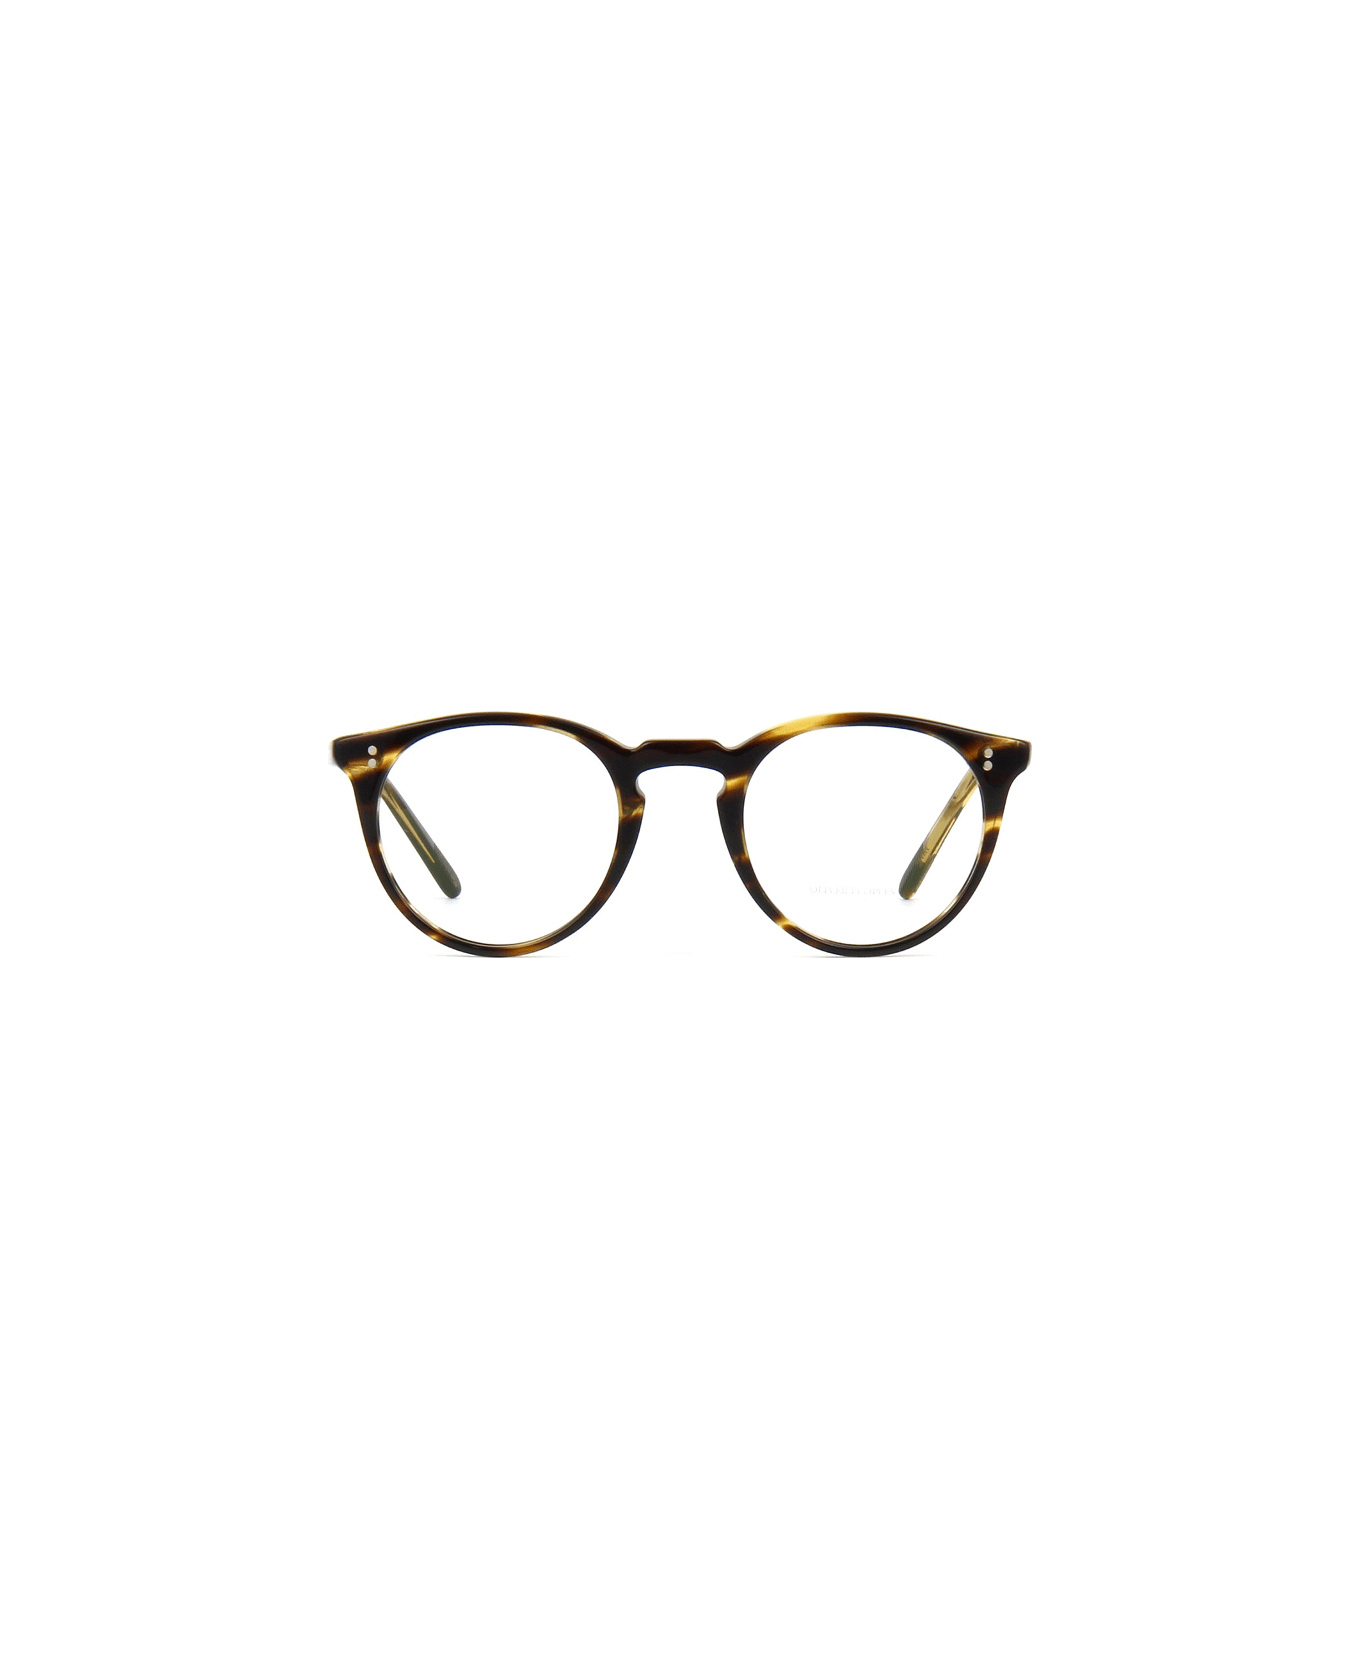 Oliver Peoples OV5183 1003 Glasses アイウェア